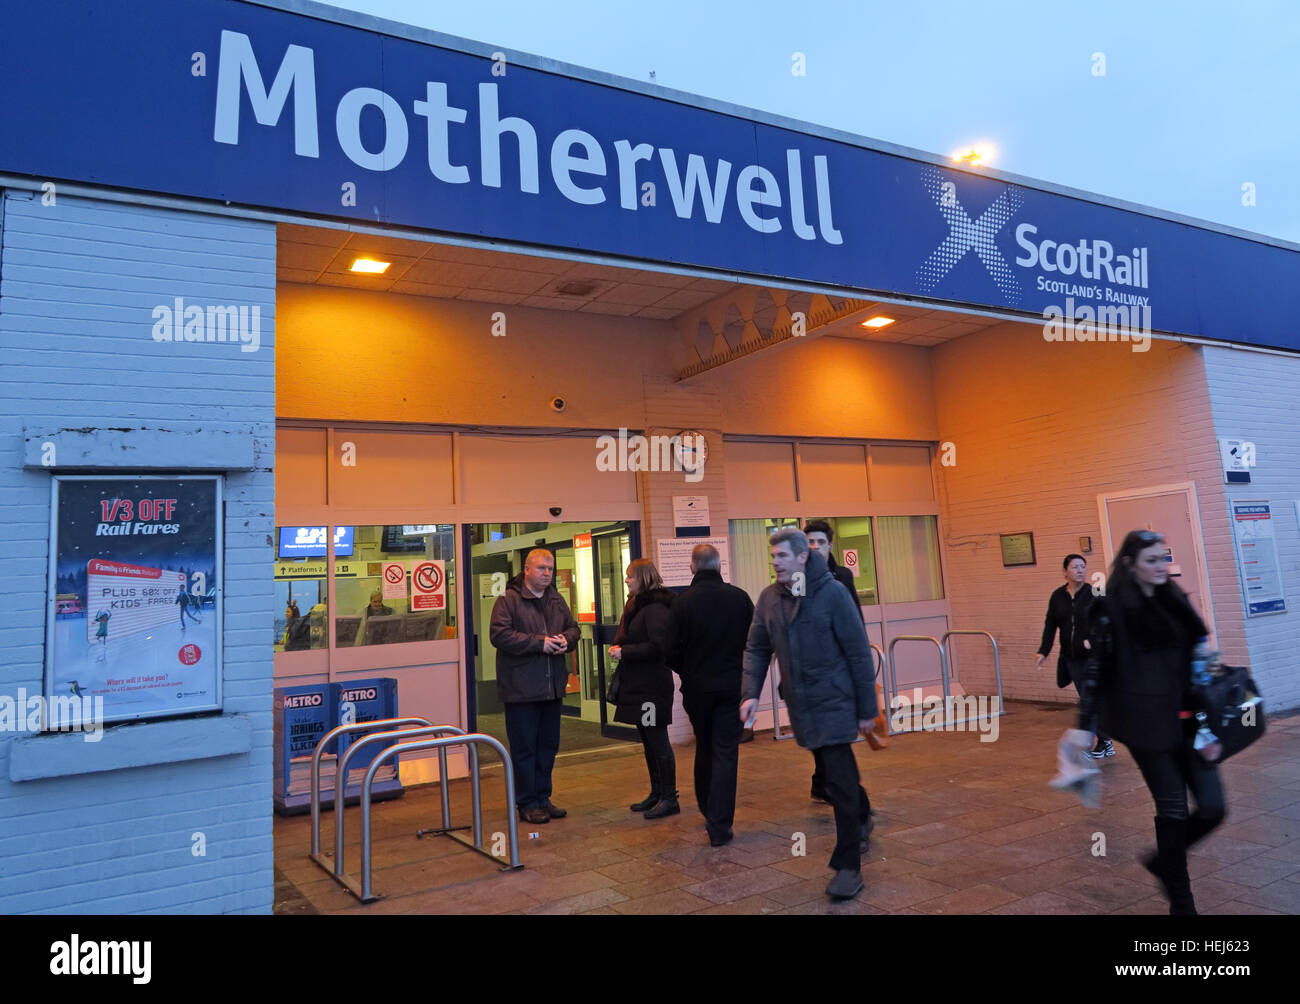 ScotRail stazione ferroviaria Motherwell,North Lanarkshire,Scozia,UK al crepuscolo Foto Stock